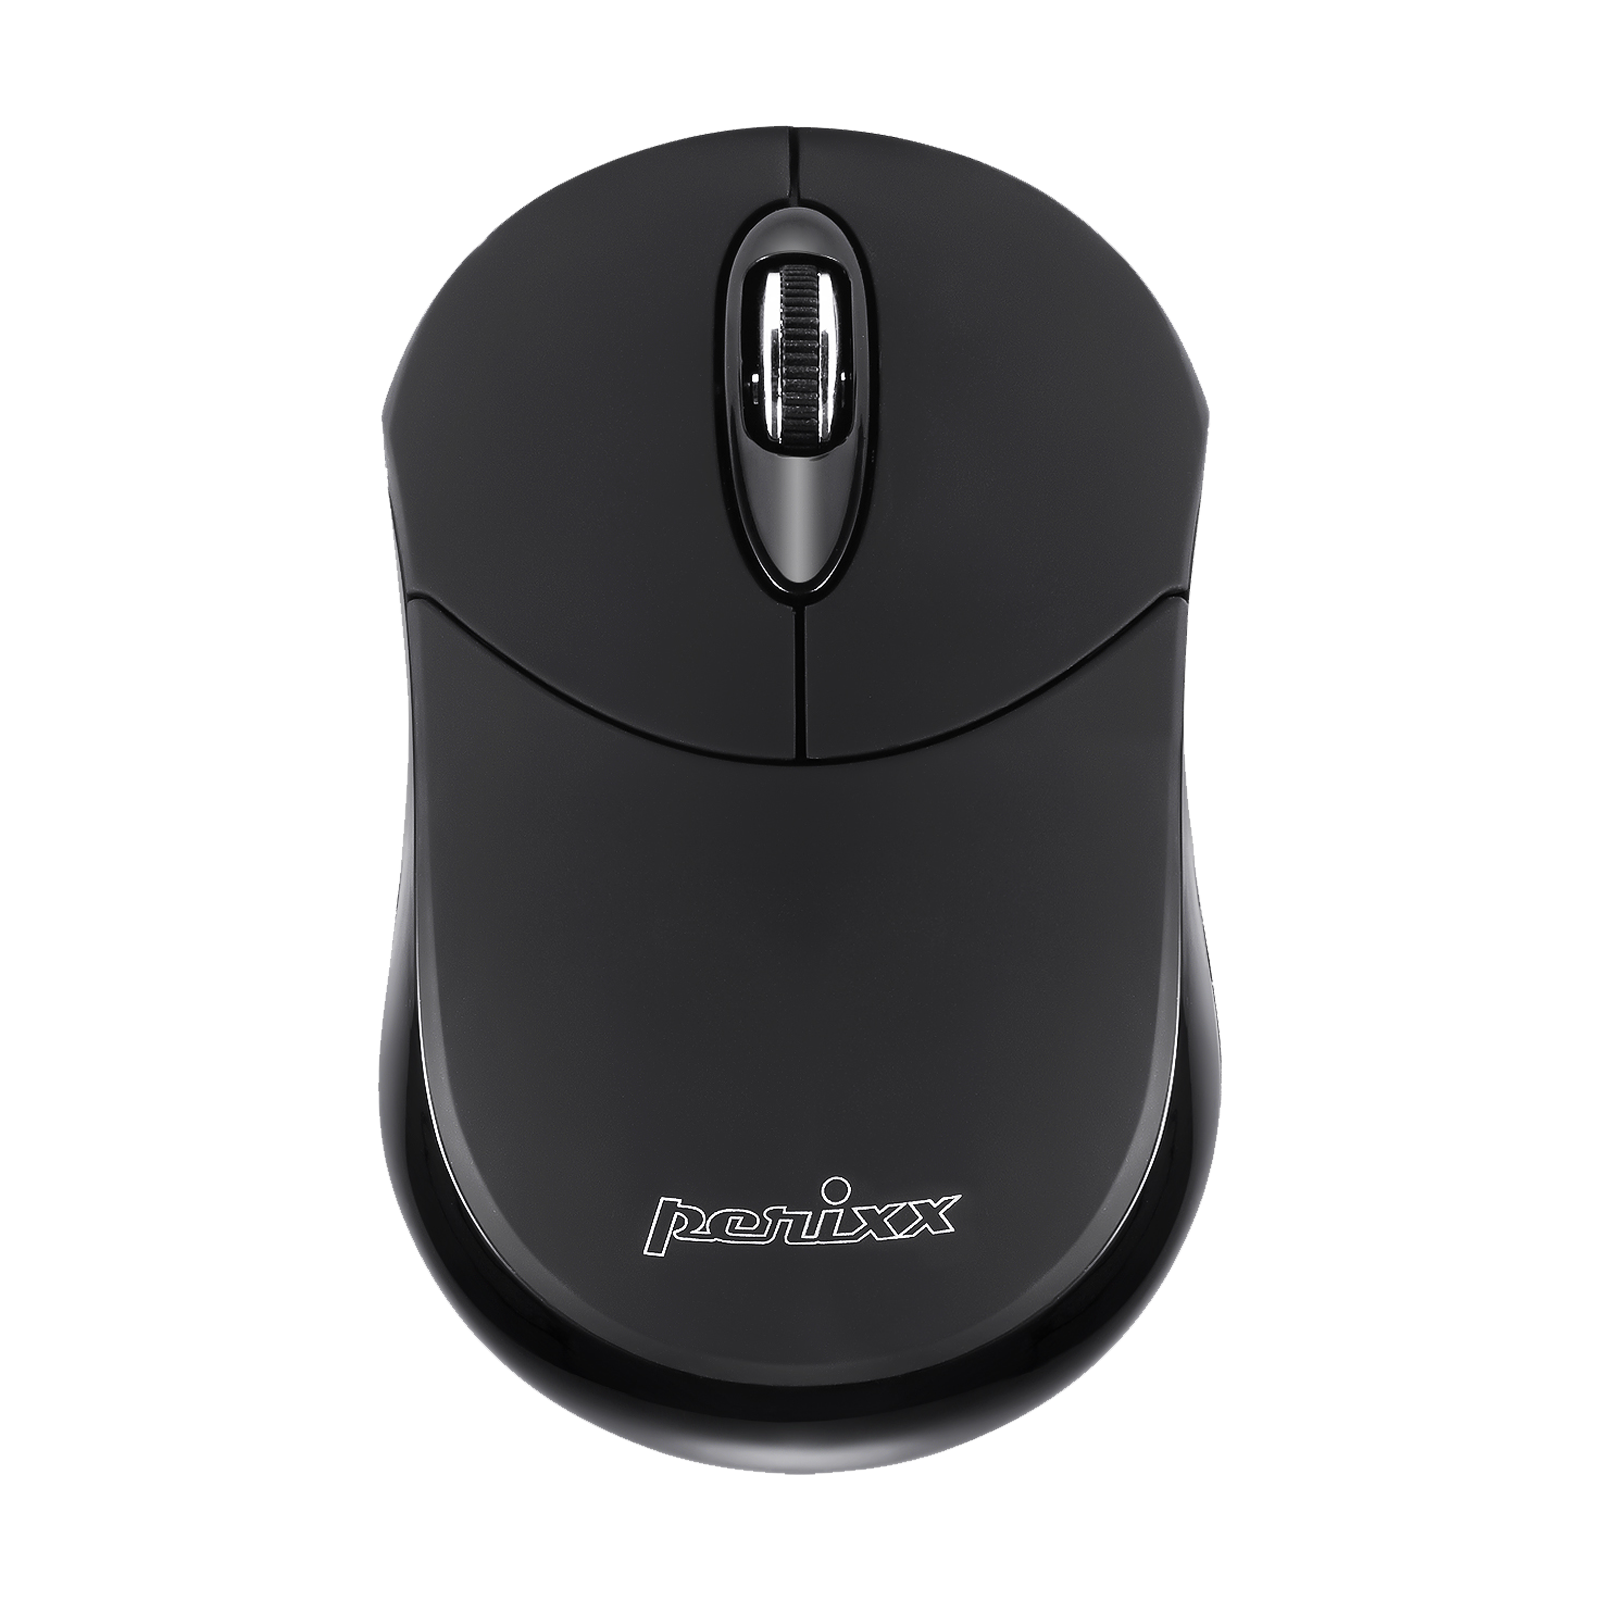 PERIMICE-802 B - Bluetooth Mini Mouse 1000 DPI Wide Compatibility Perixx USA